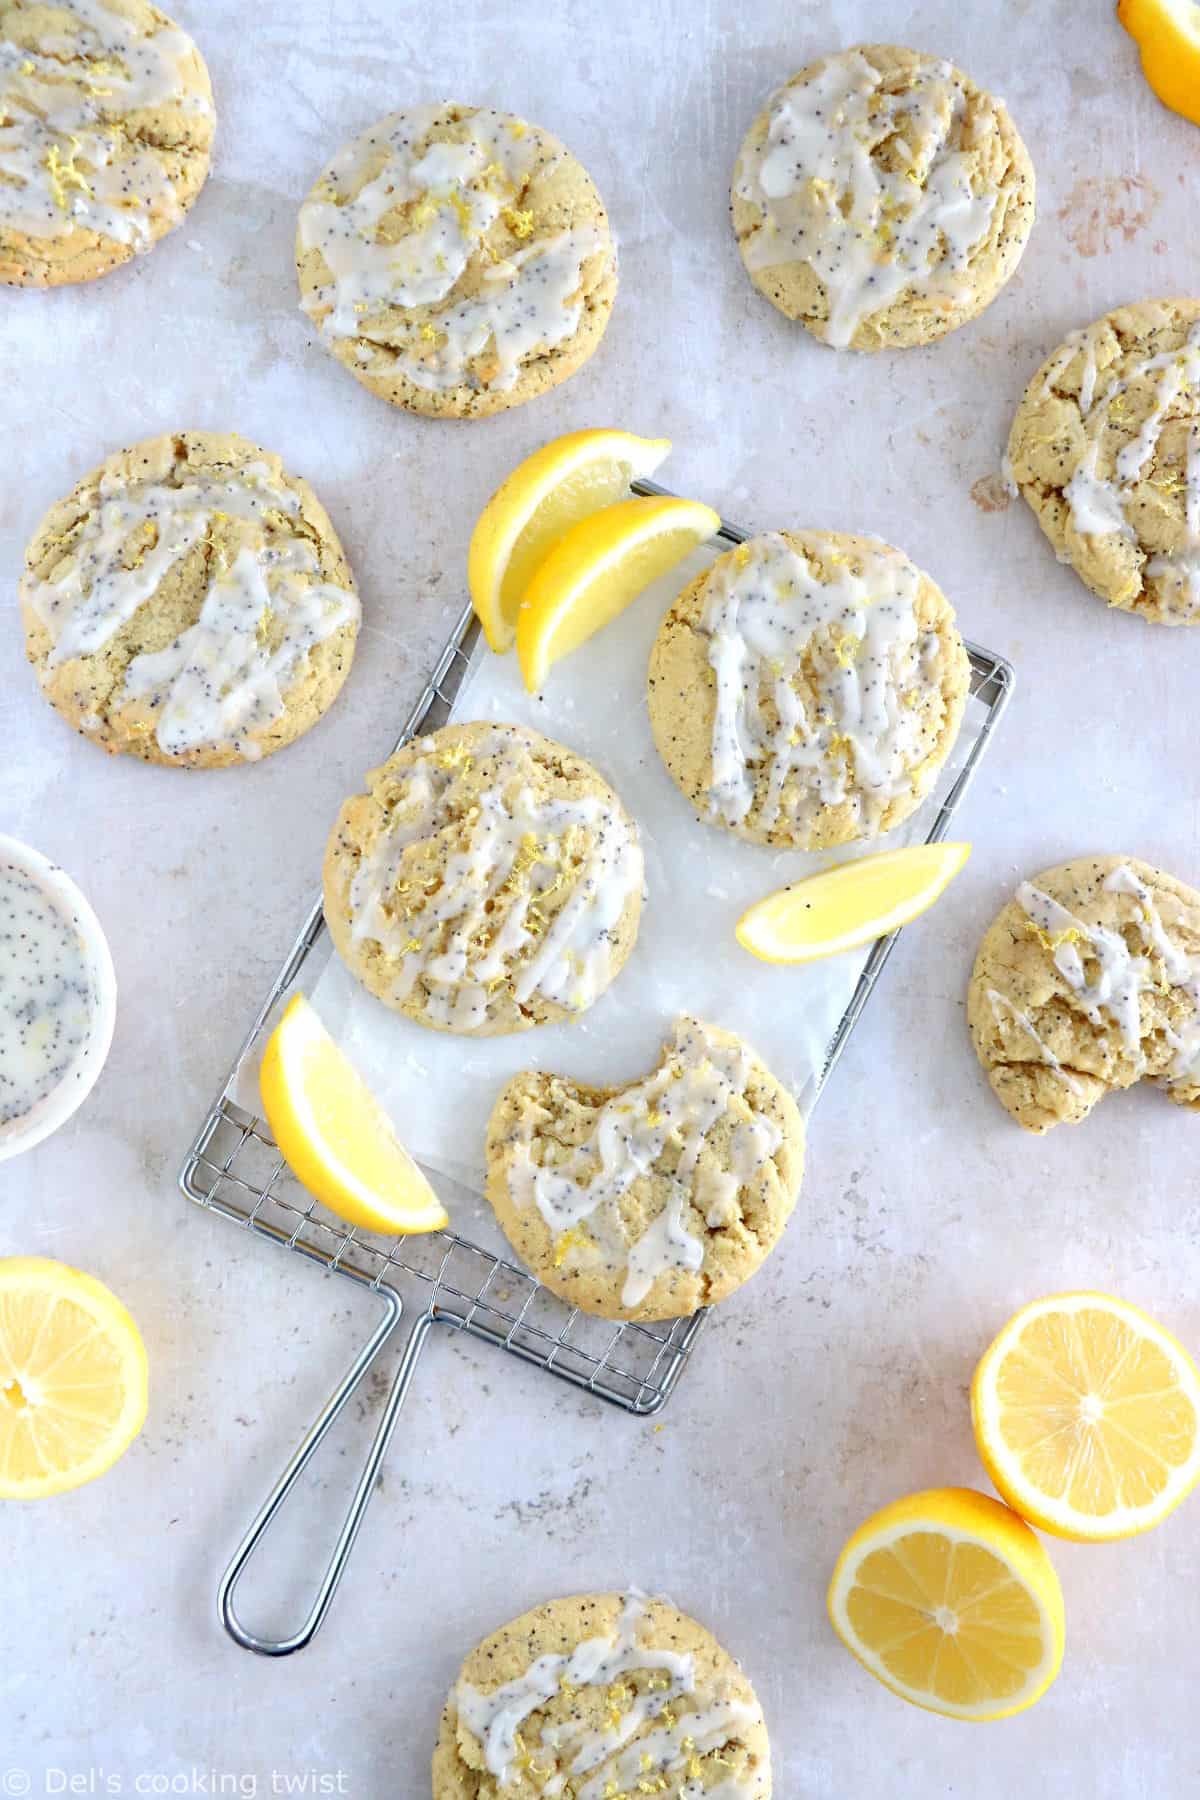 Ces cookies au citron et graines de pavot ont tout de votre cake citron-graines de pavot préféré, mais avec une texture de cookies à la fois croquante et chewy.